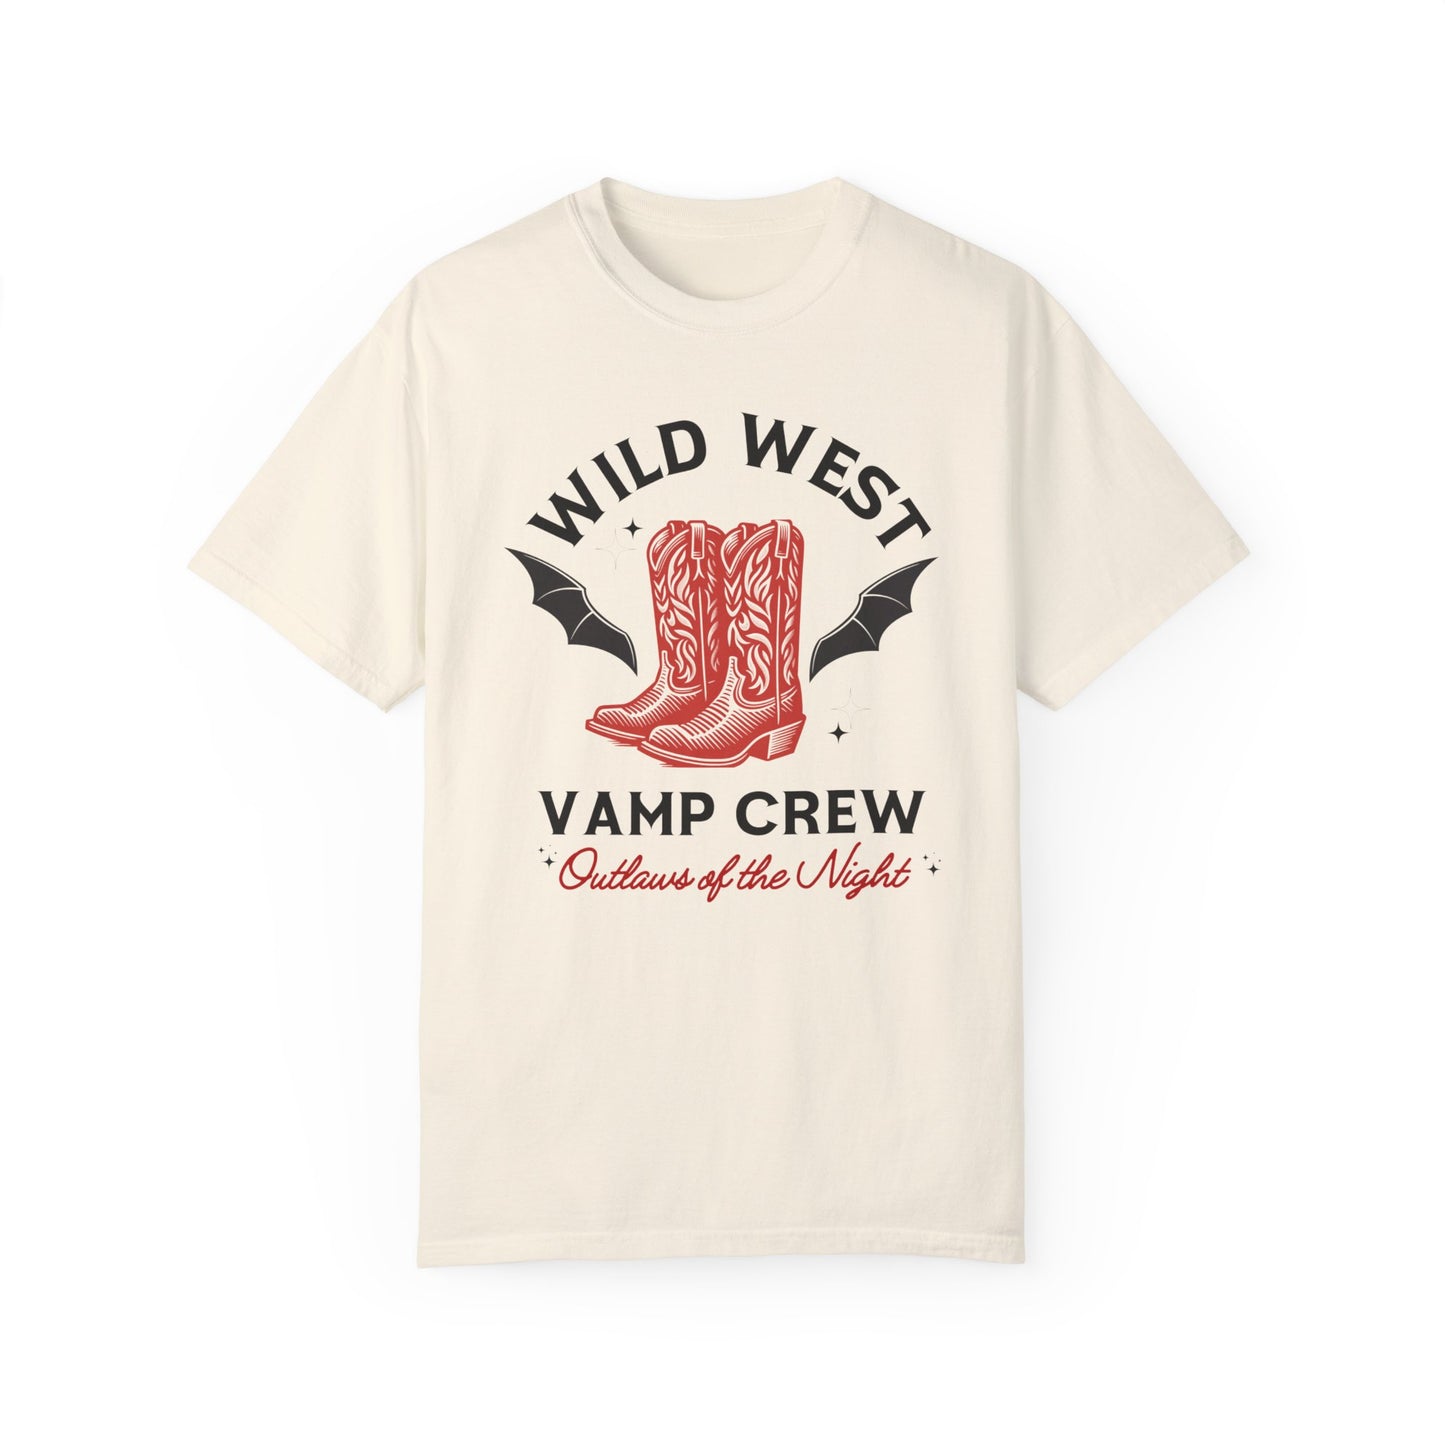 Wild West Vamp Crew